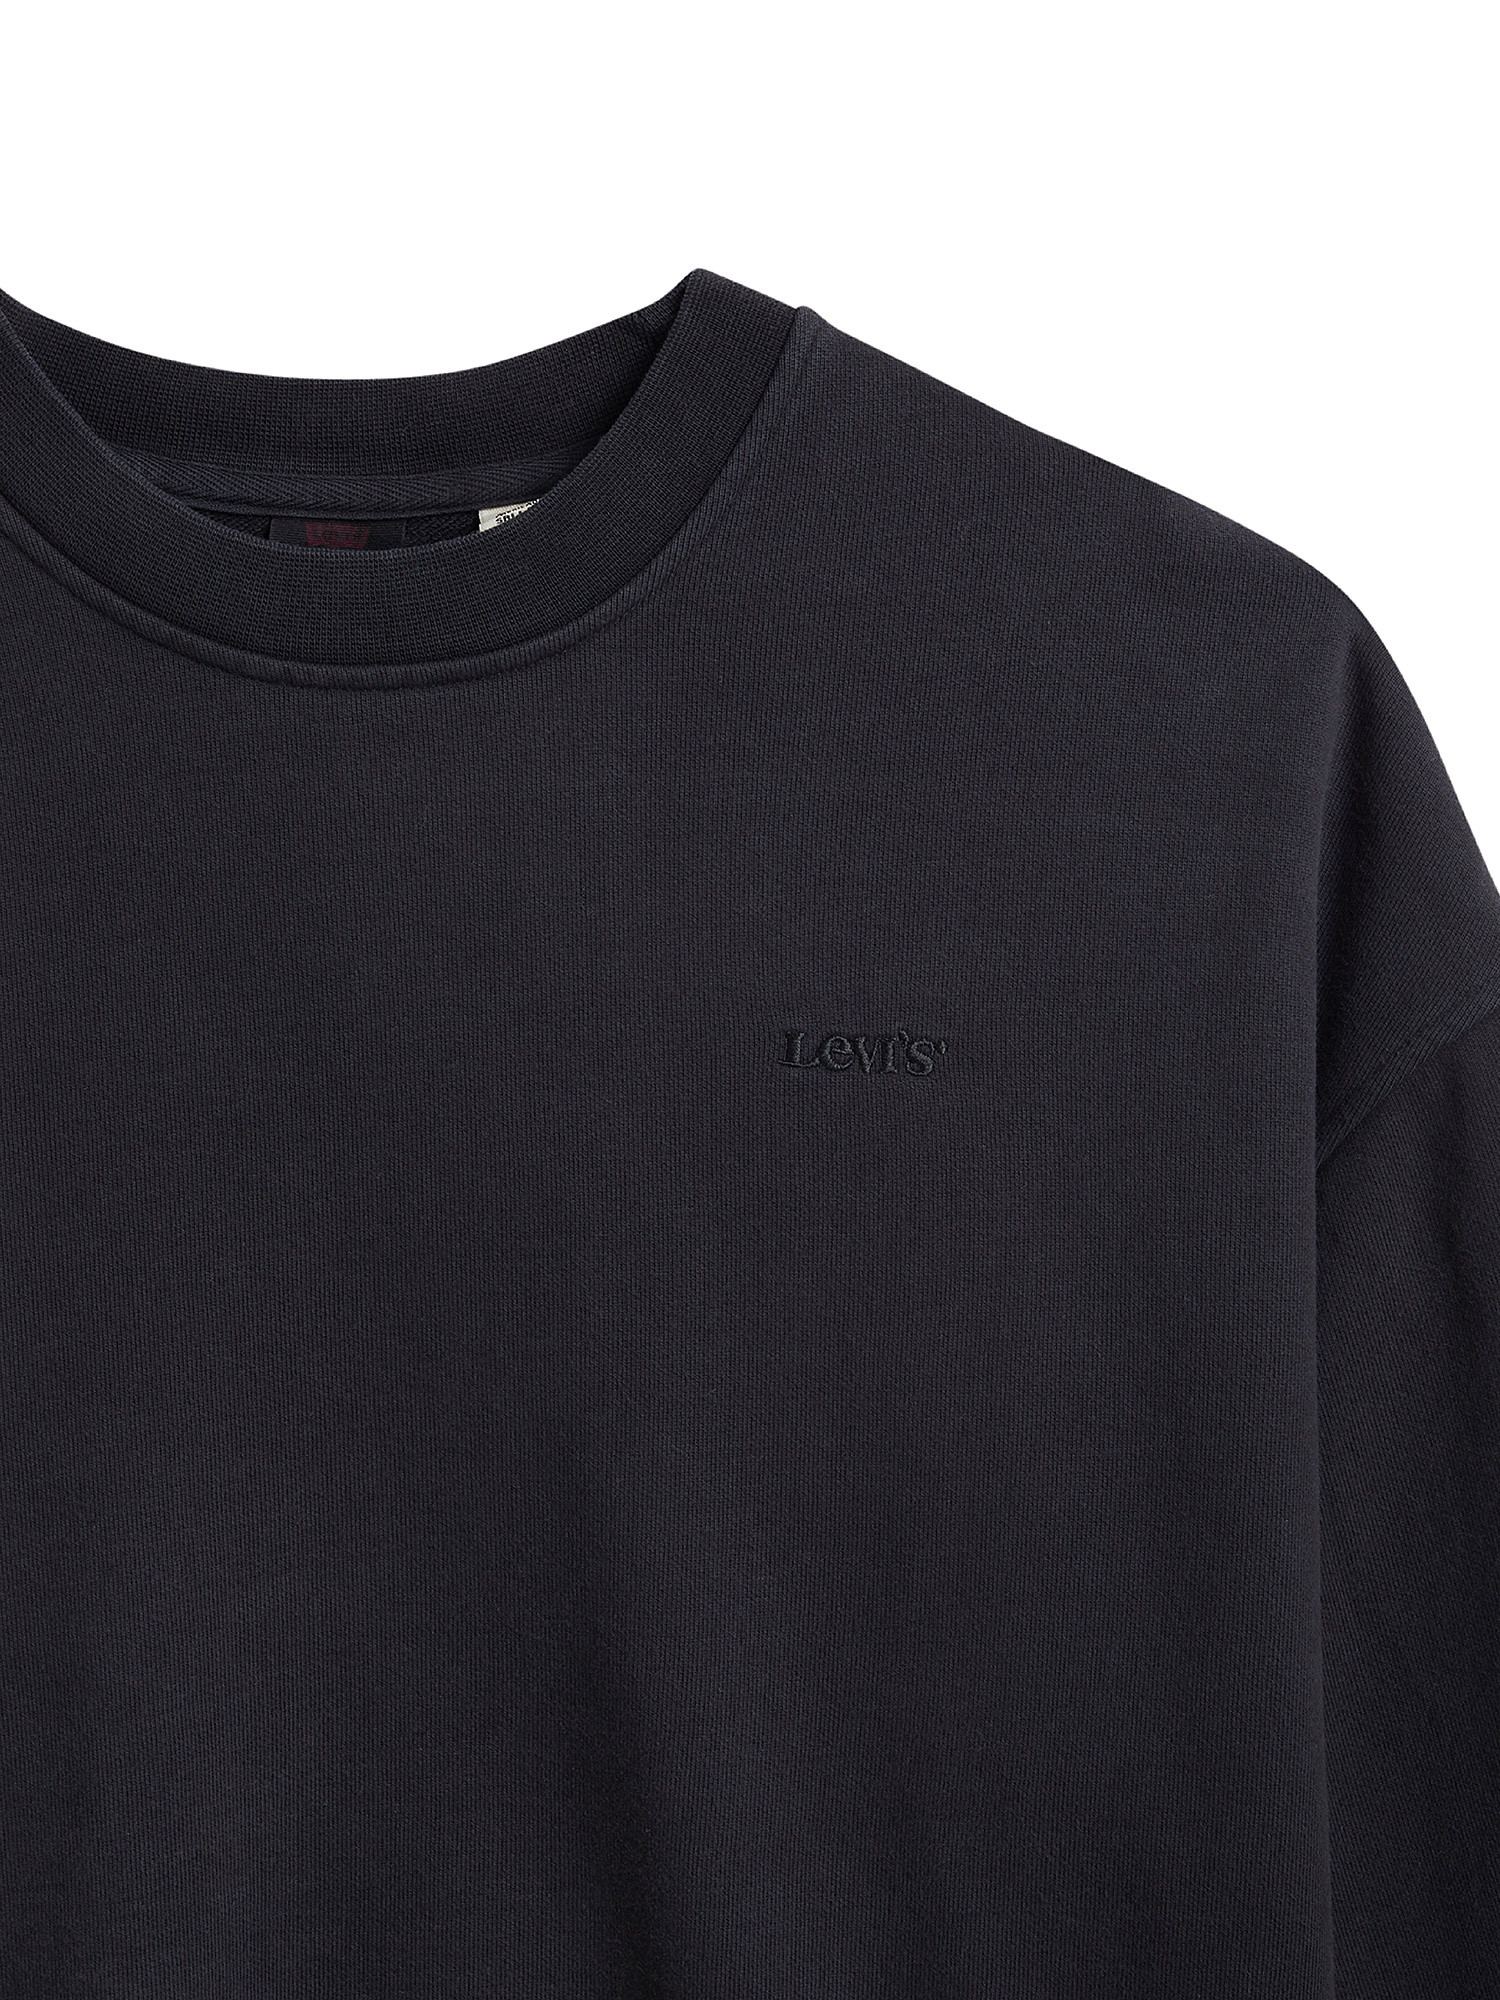 WFH Loungewear sweatshirt, Black, large image number 2